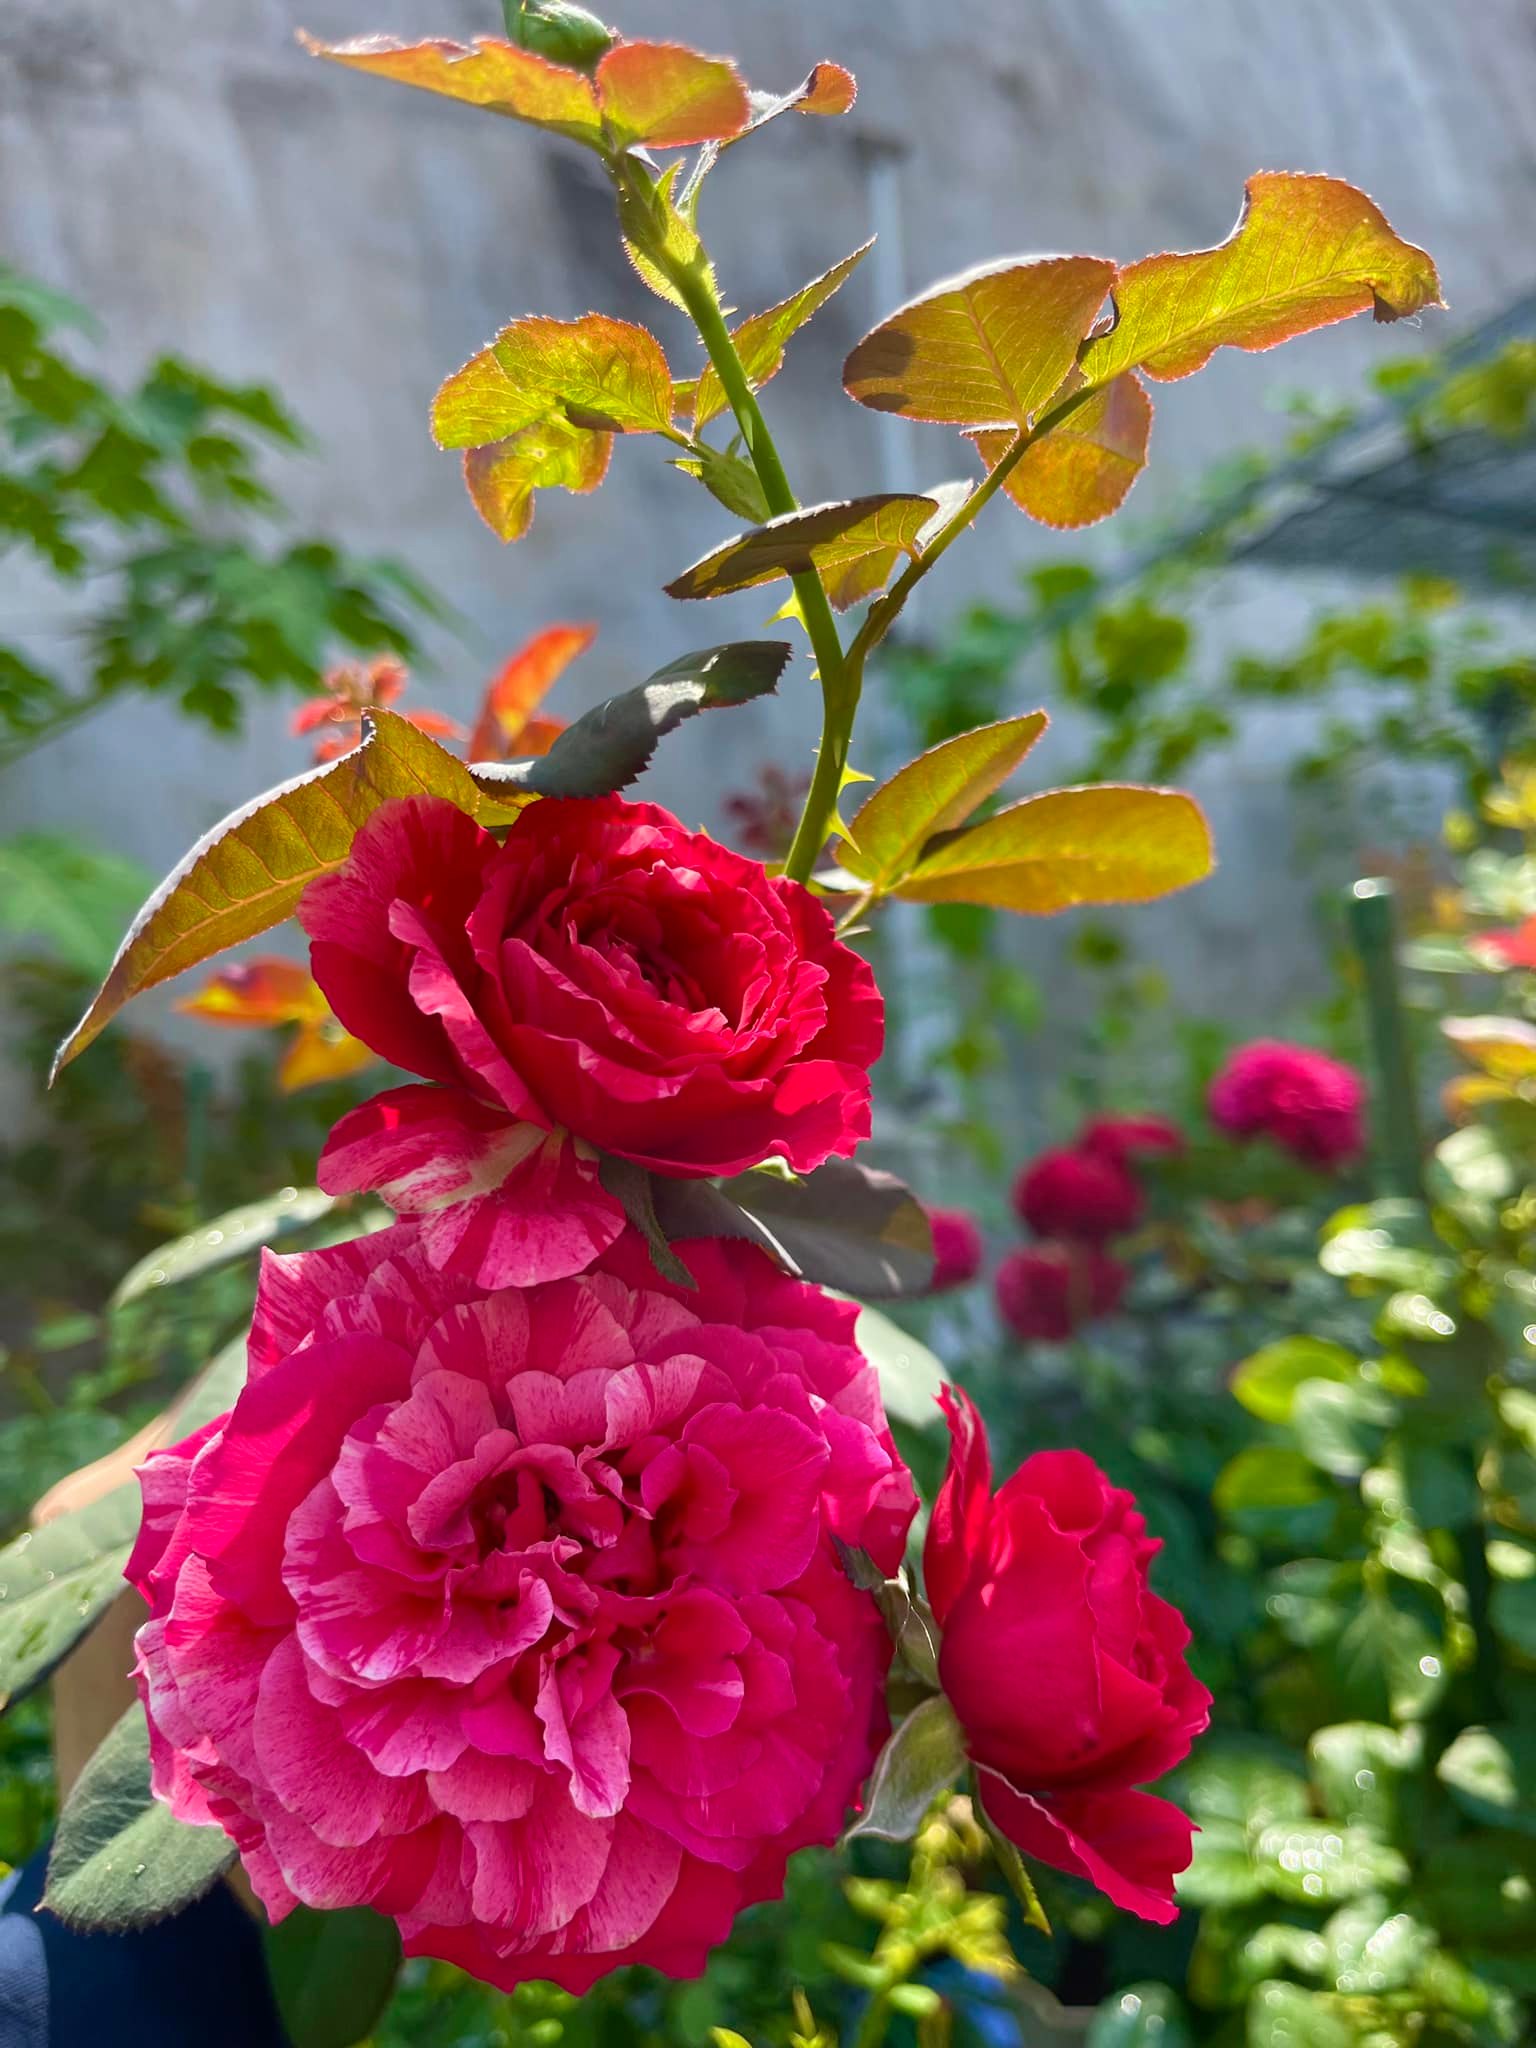 Vườn hoa hồng ngoại đẹp ngây ngất trên sân thượng giữa Sài thành của trai đẹp Sài Gòn - Ảnh 11.